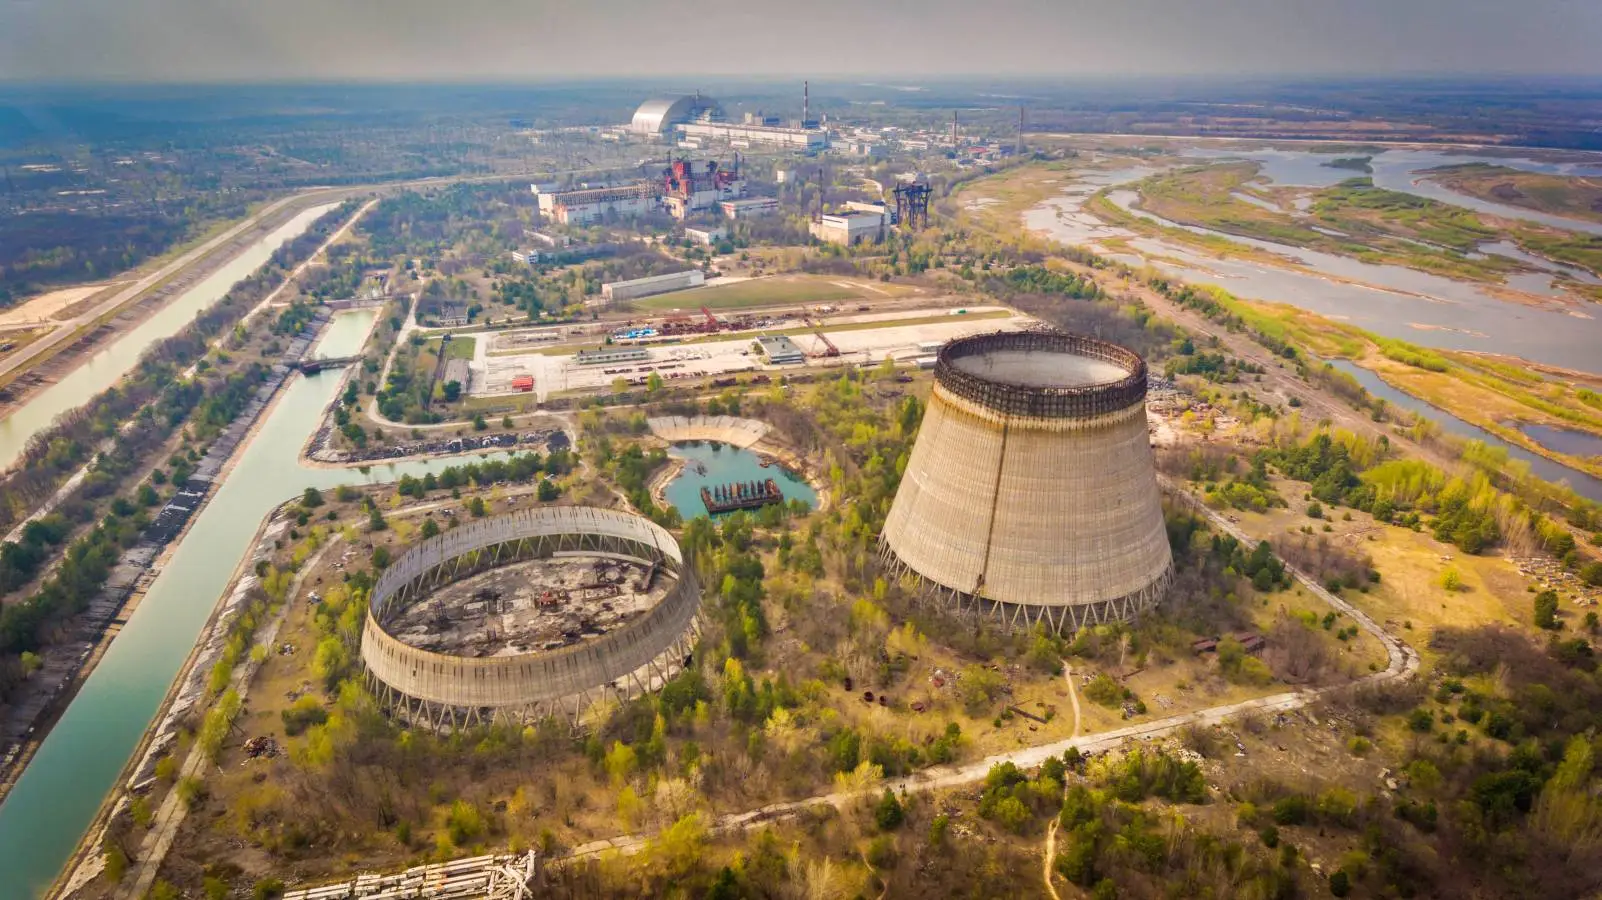 Hälytys lähellä Zaporozhyen ydinvoimalaa, Ukrainan ilmoitus